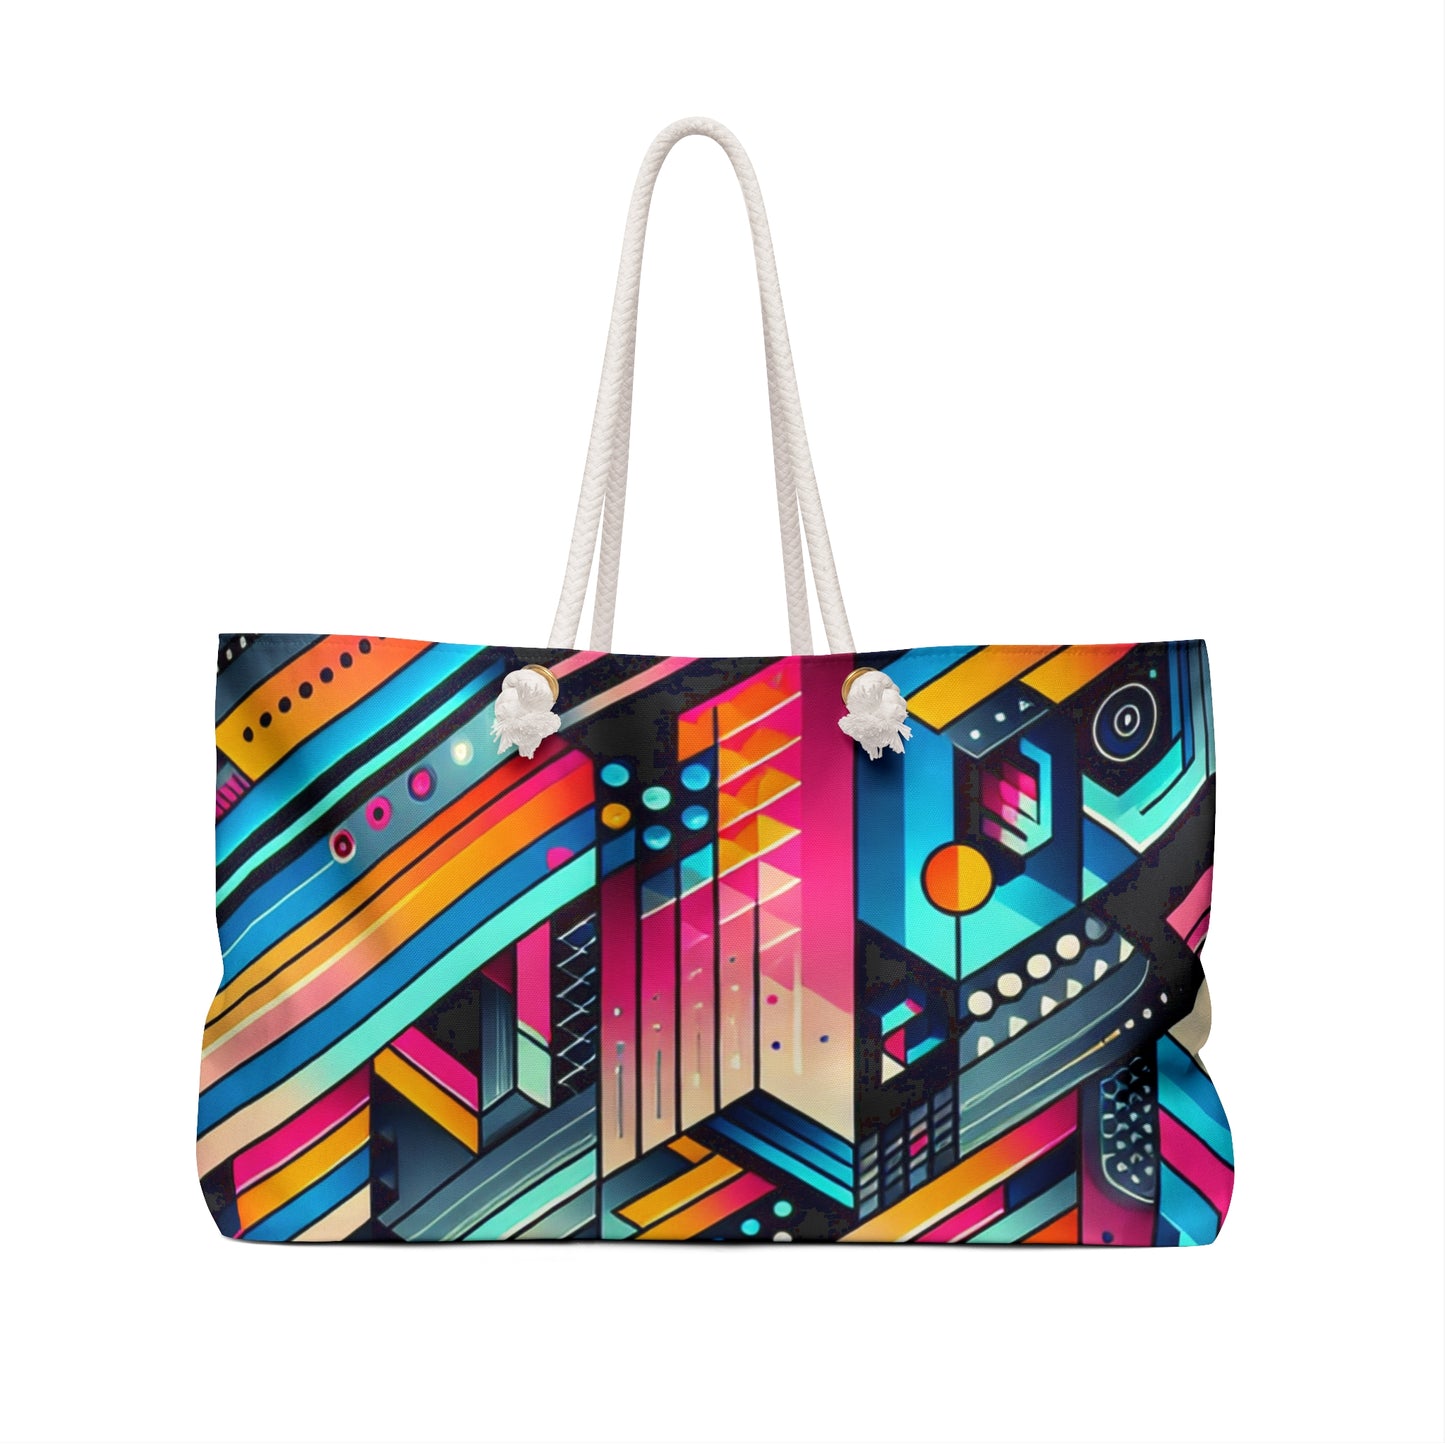 Neon Geometry - The Alien Weekender Bag Digital Art Style